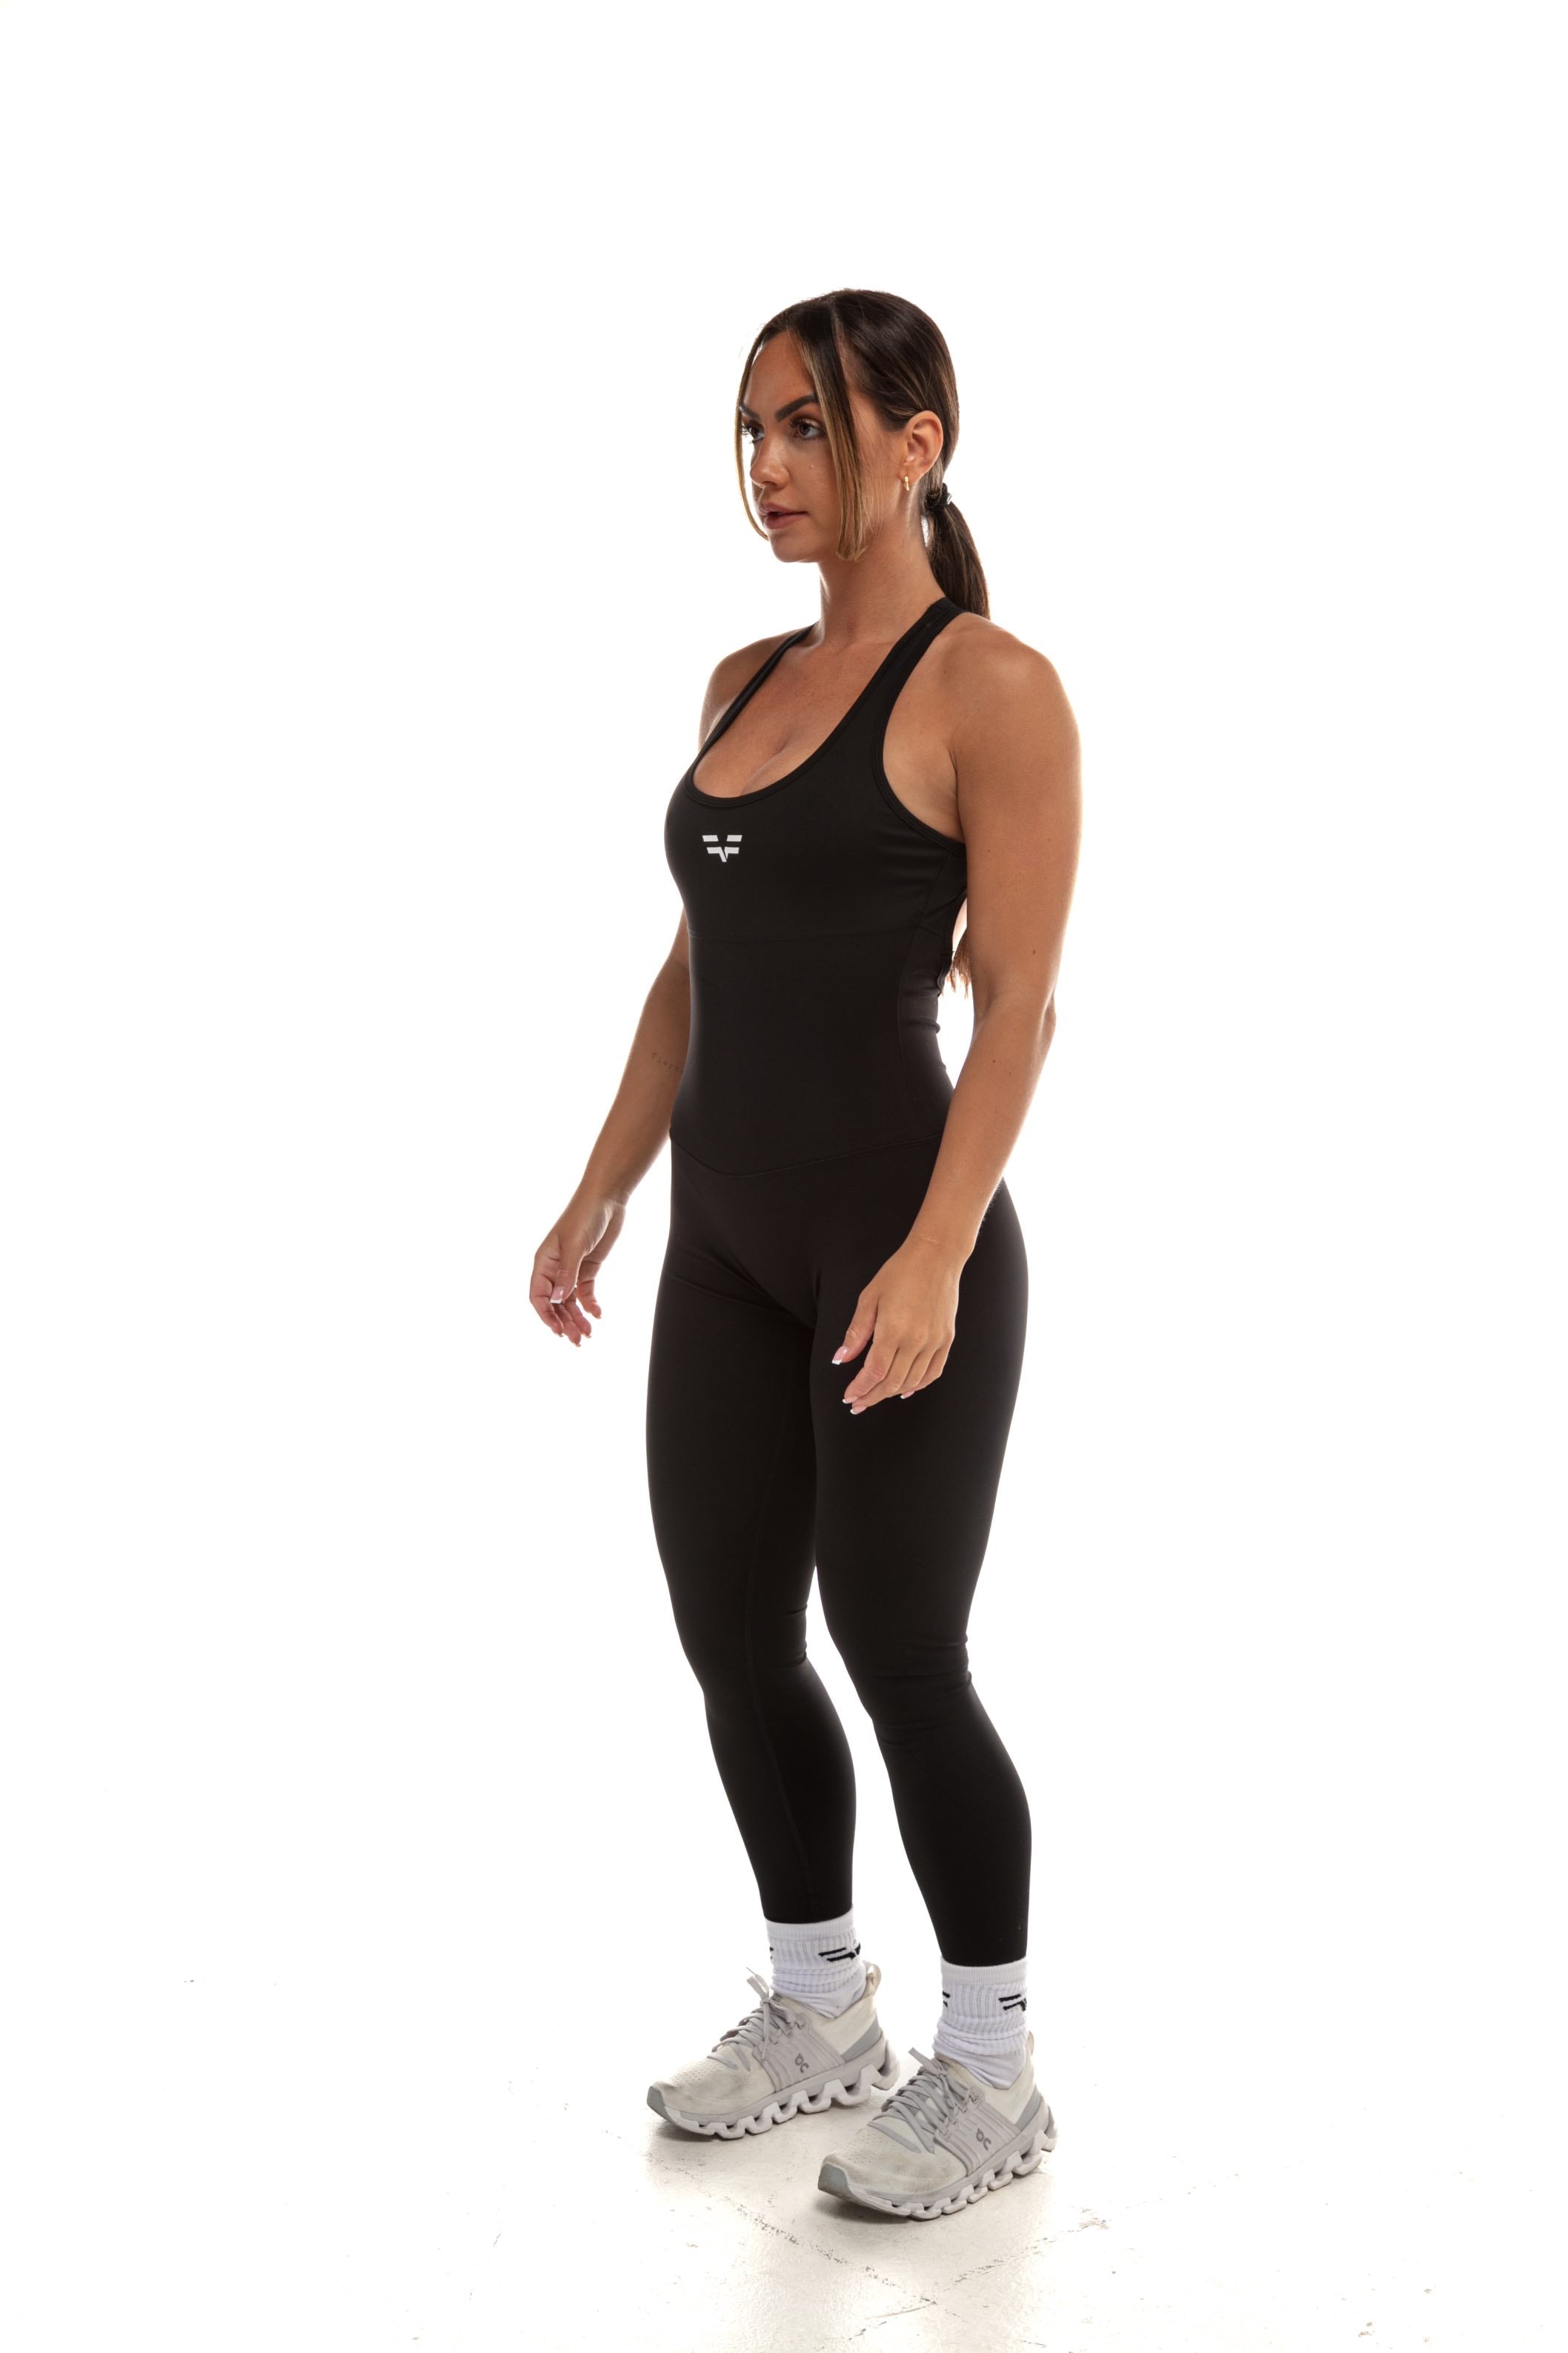 GymFreak Women's Vision Unitard - Black - legging style